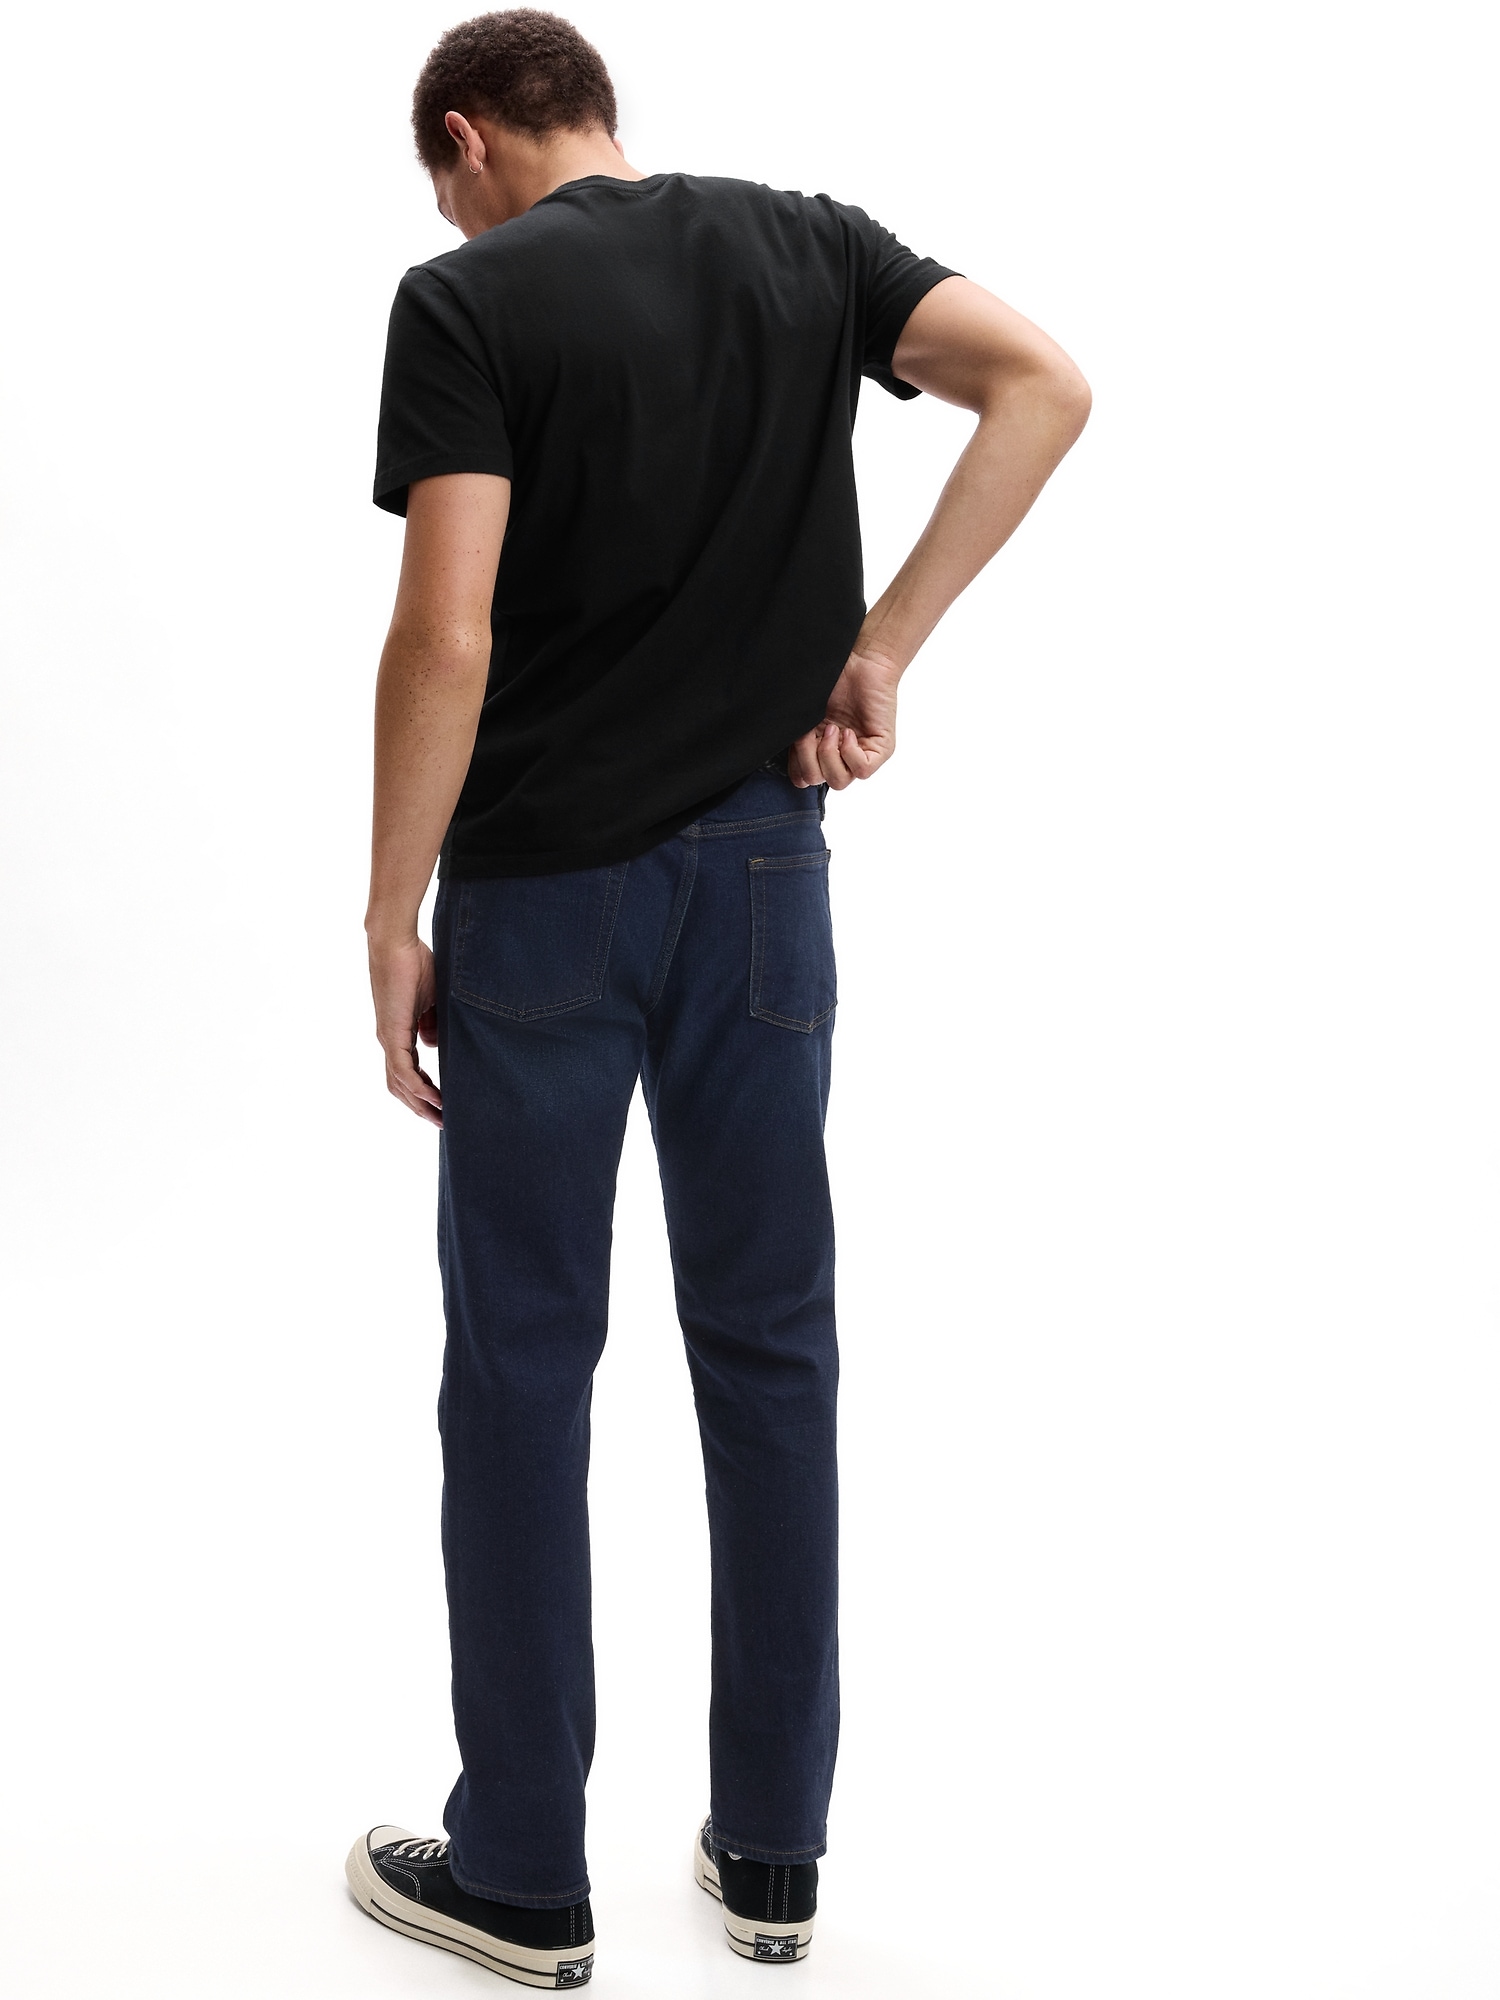 Gap Mens Everyday Slim Jeans GapFlex Stretch Denim Resin Rinse